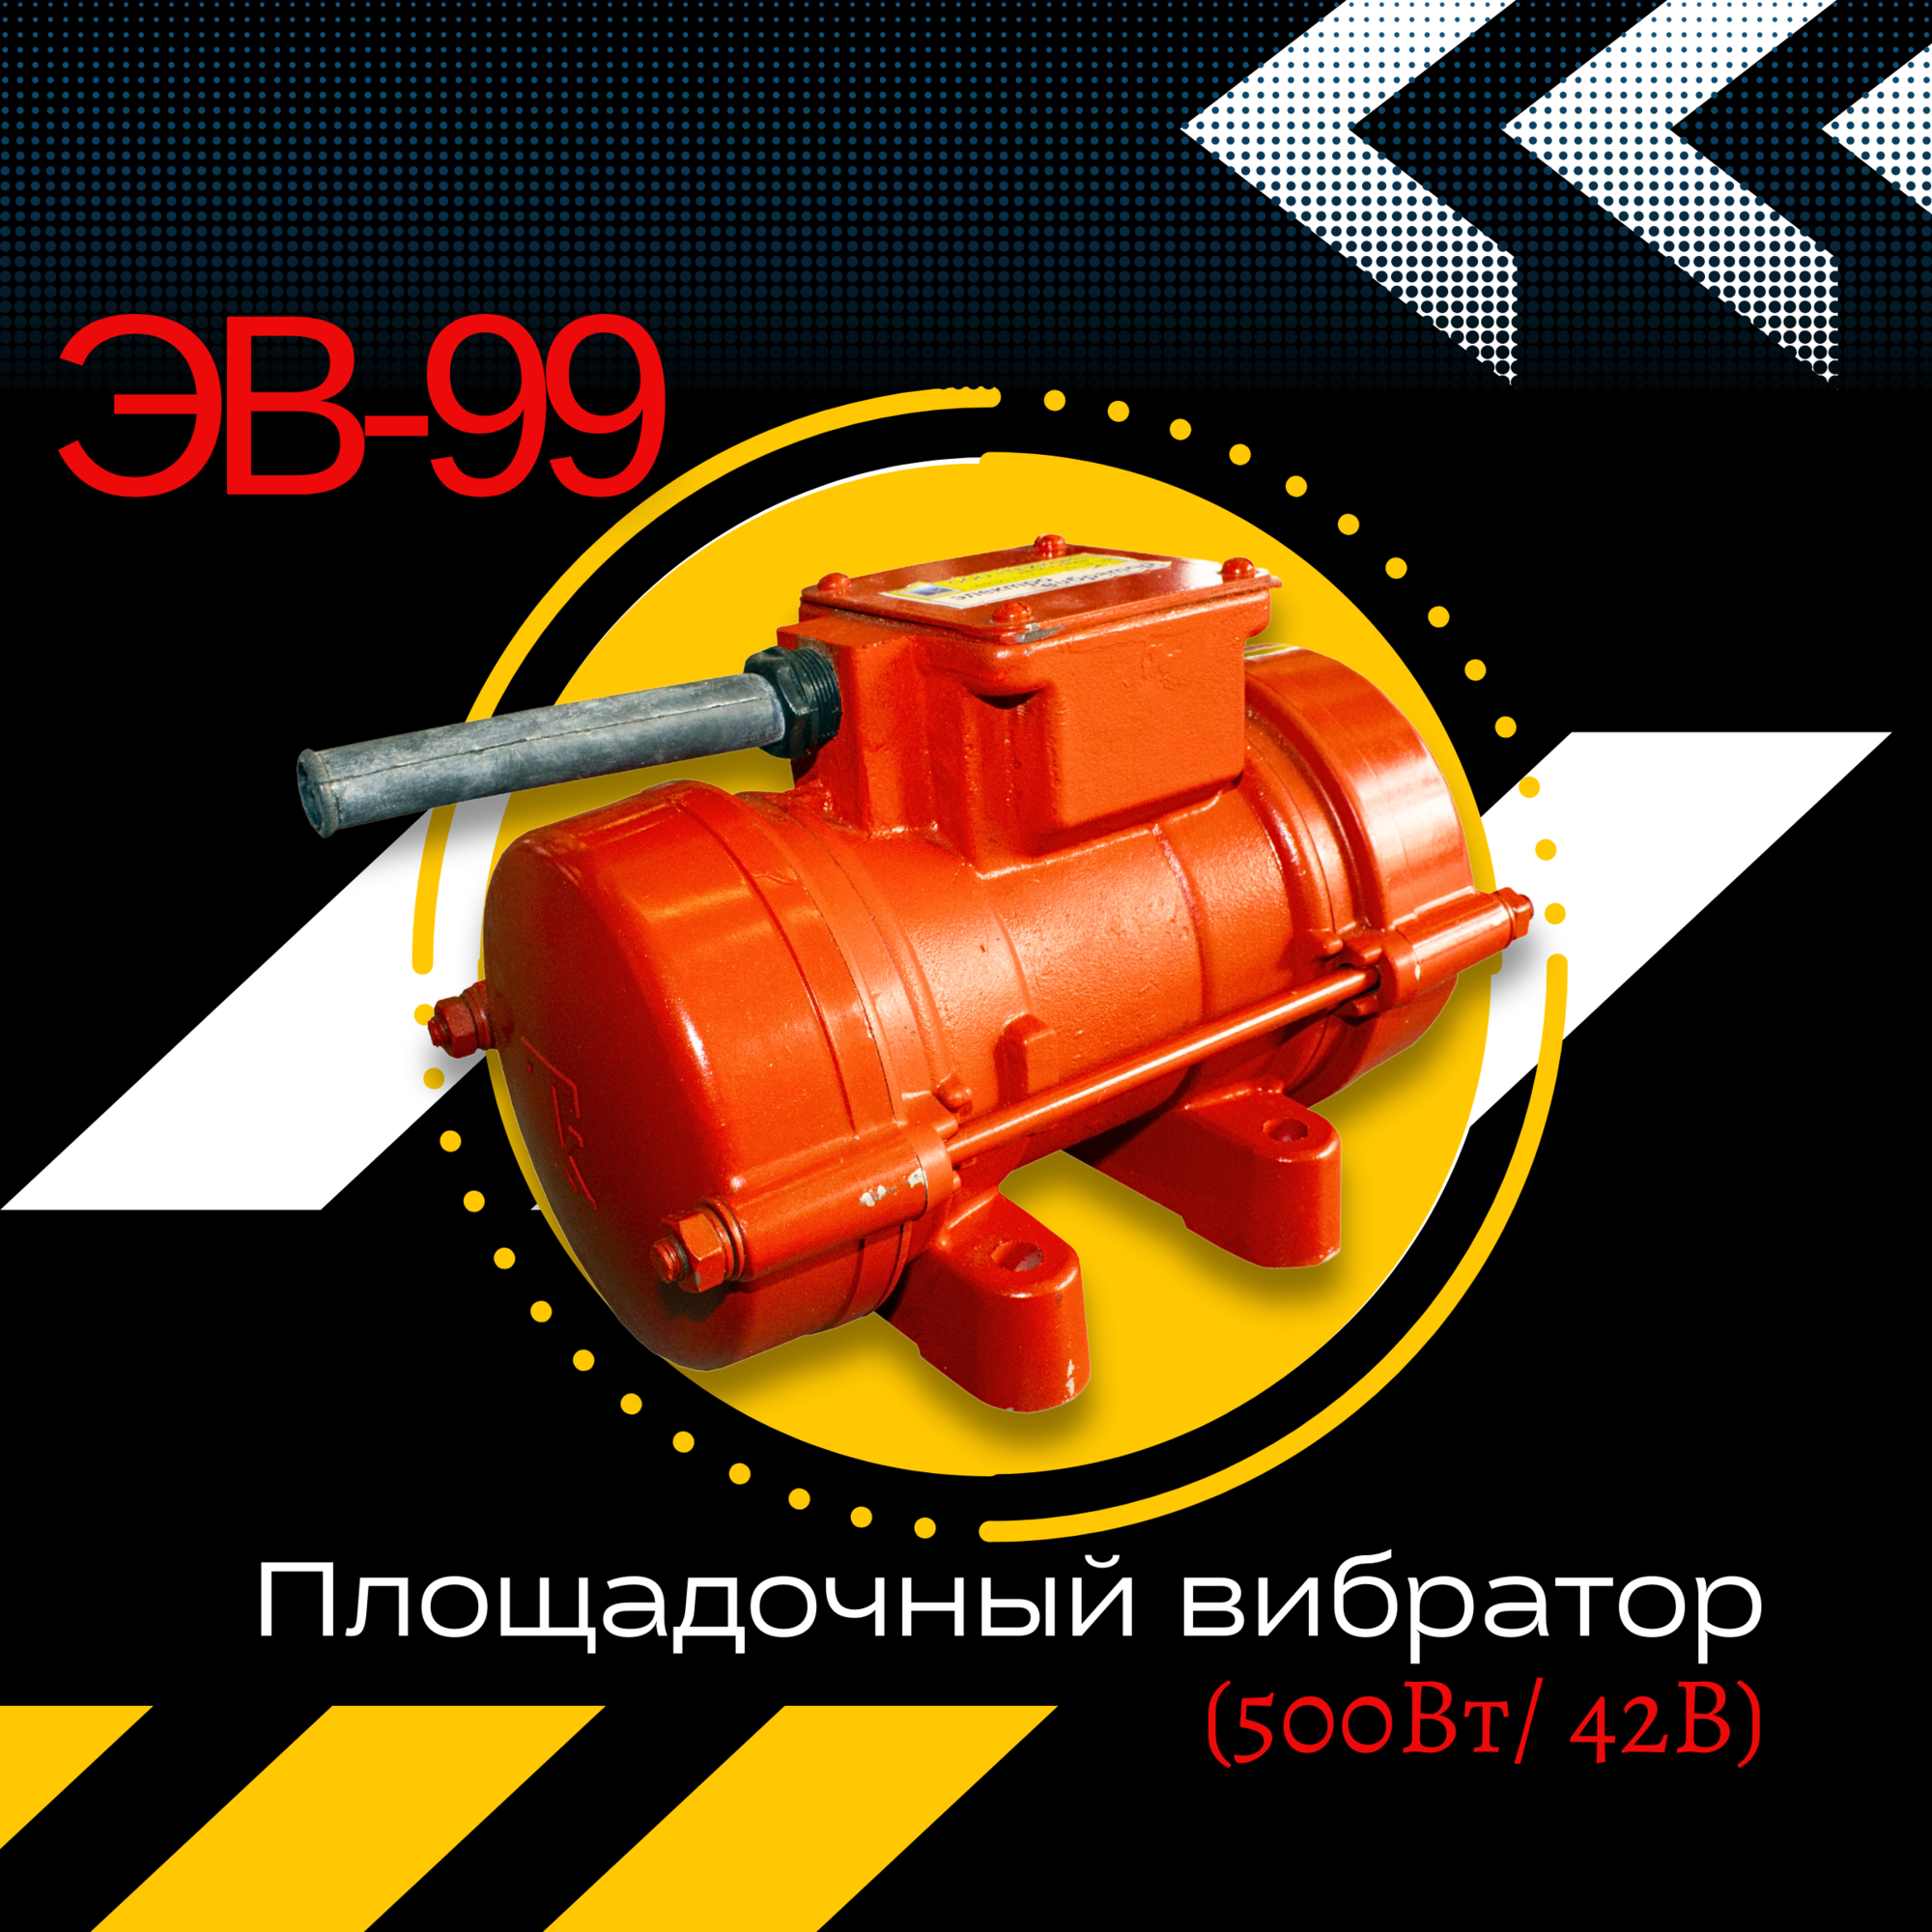 Площадочный вибратор ЭВ-99 (500 Вт / 42 В)